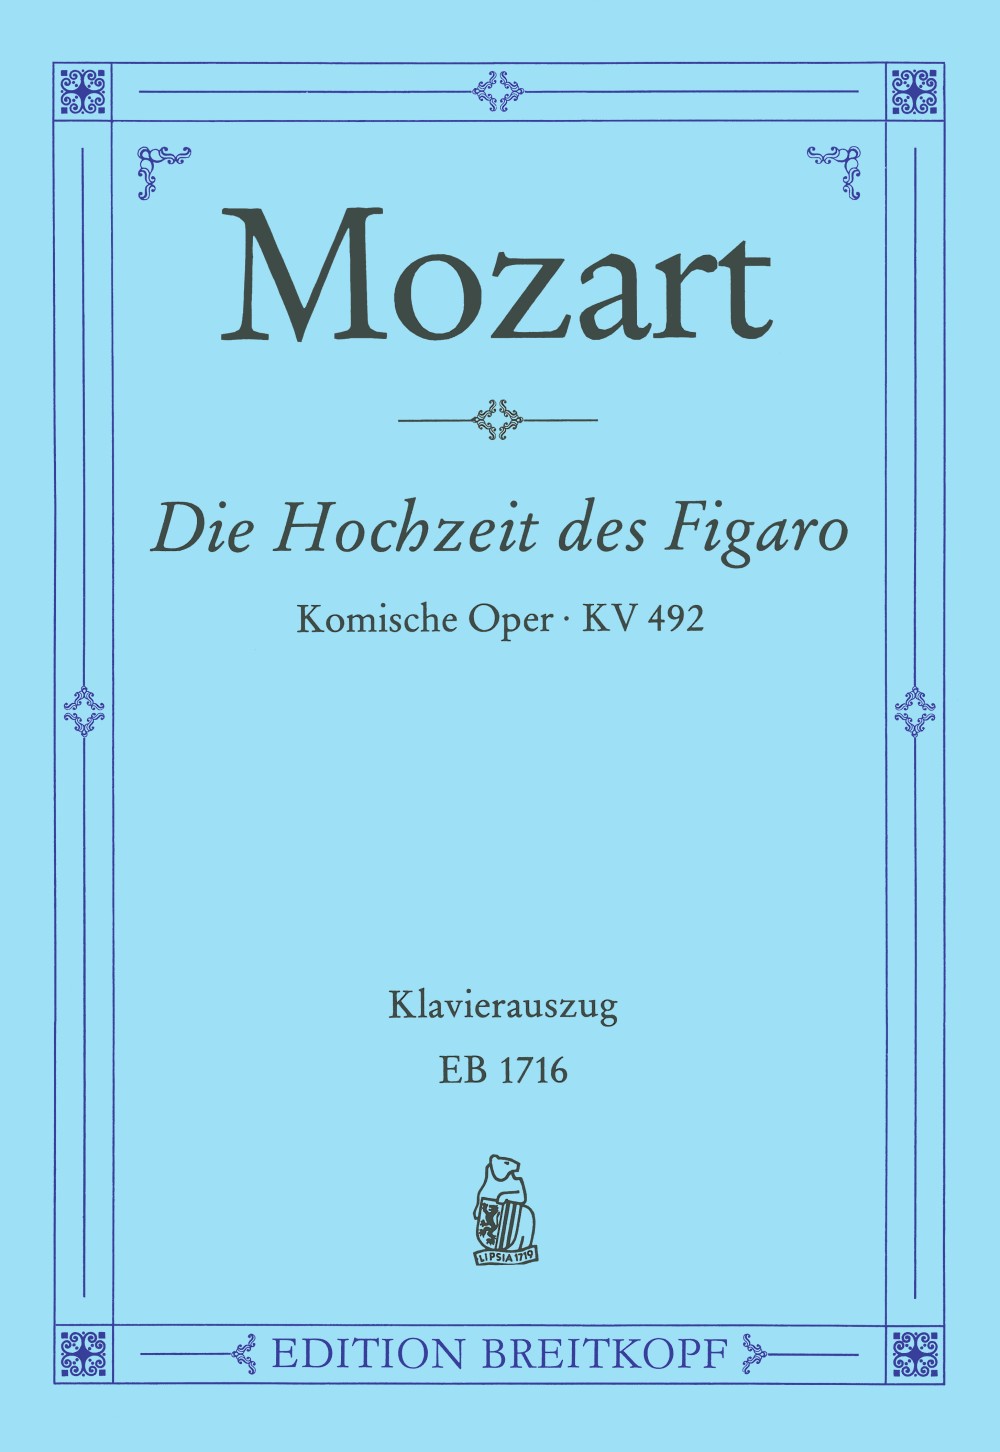 Mozart Le Nozze di Figaro - Vocal Score